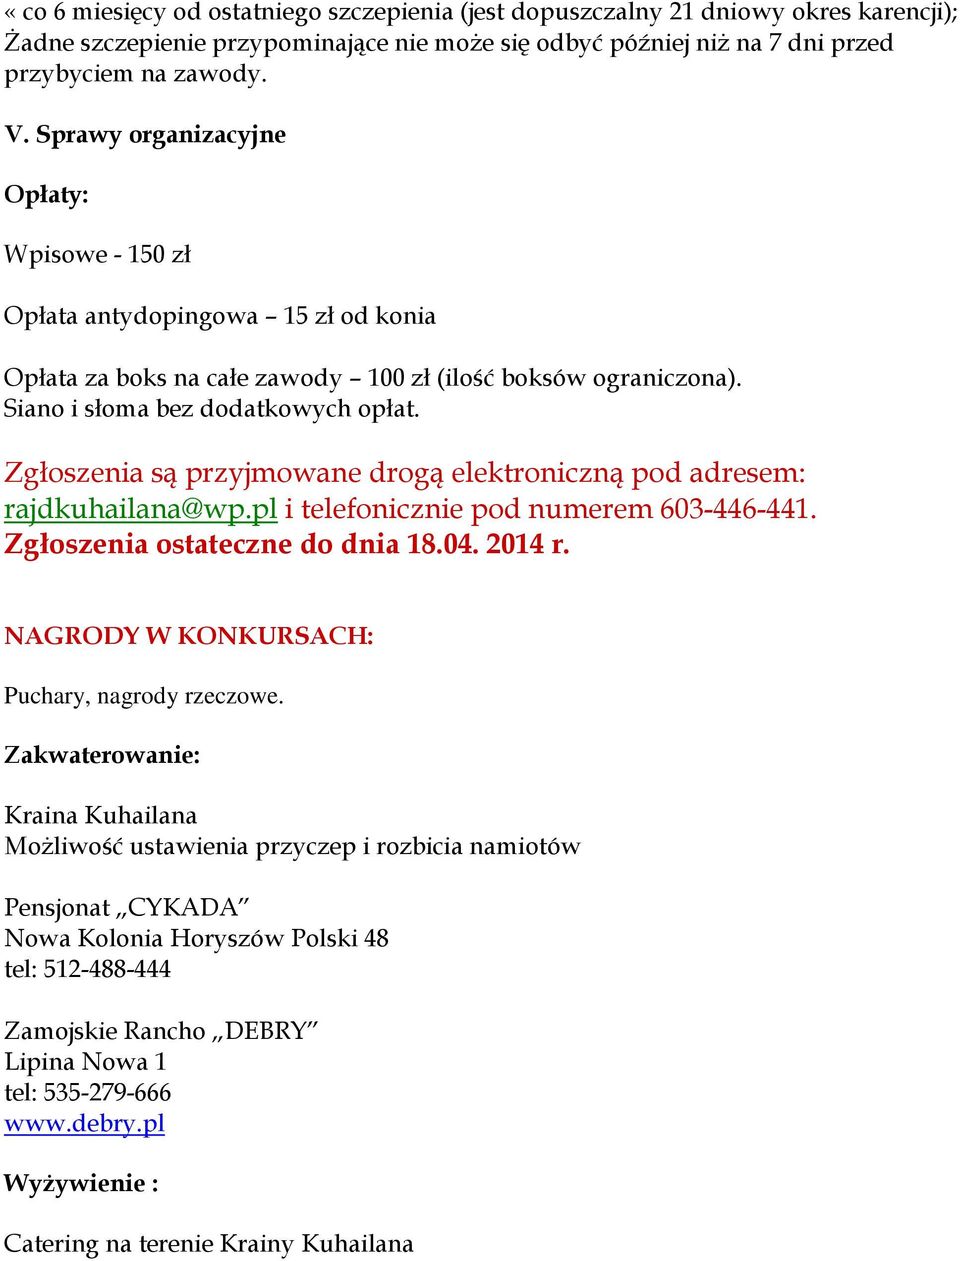 Zgłoszenia są przyjmowane drogą elektroniczną pod adresem: rajdkuhailana@wp.pl i telefonicznie pod numerem 603-446-441. Zgłoszenia ostateczne do dnia 18.04. 2014 r.